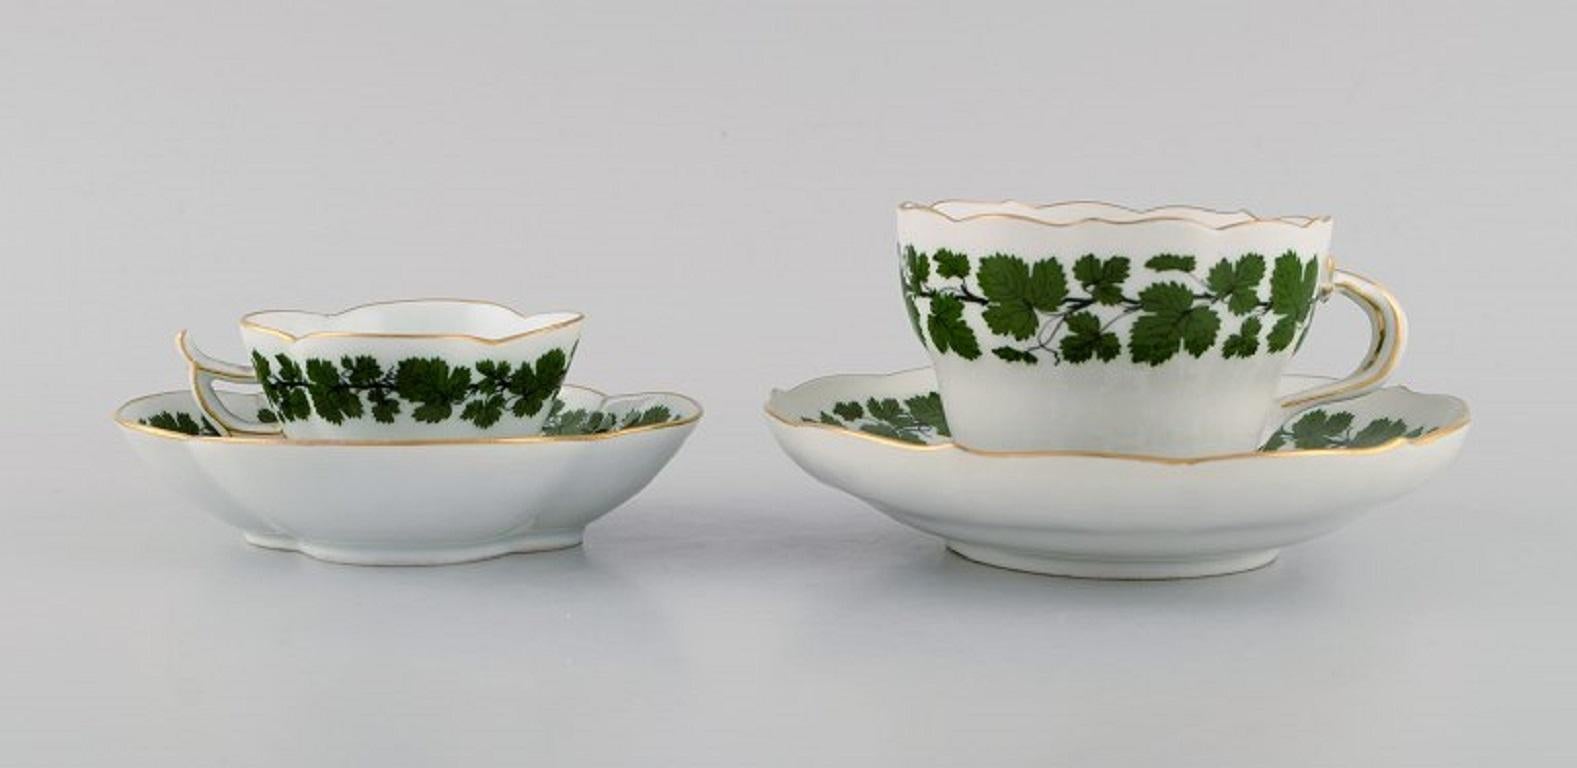 Meissen Green Ivy Vine Leaf Mokka- und Teetasse aus handbemaltem Porzellan mit Goldrand. 
1920er/30er Jahre.
Die Teetasse misst: 9 x 6,5 cm.
Durchmesser der Untertasse: 14,8 cm.
Die Mokkatasse misst: 7 x 4,5 cm.
Durchmesser der Untertasse: 12,3